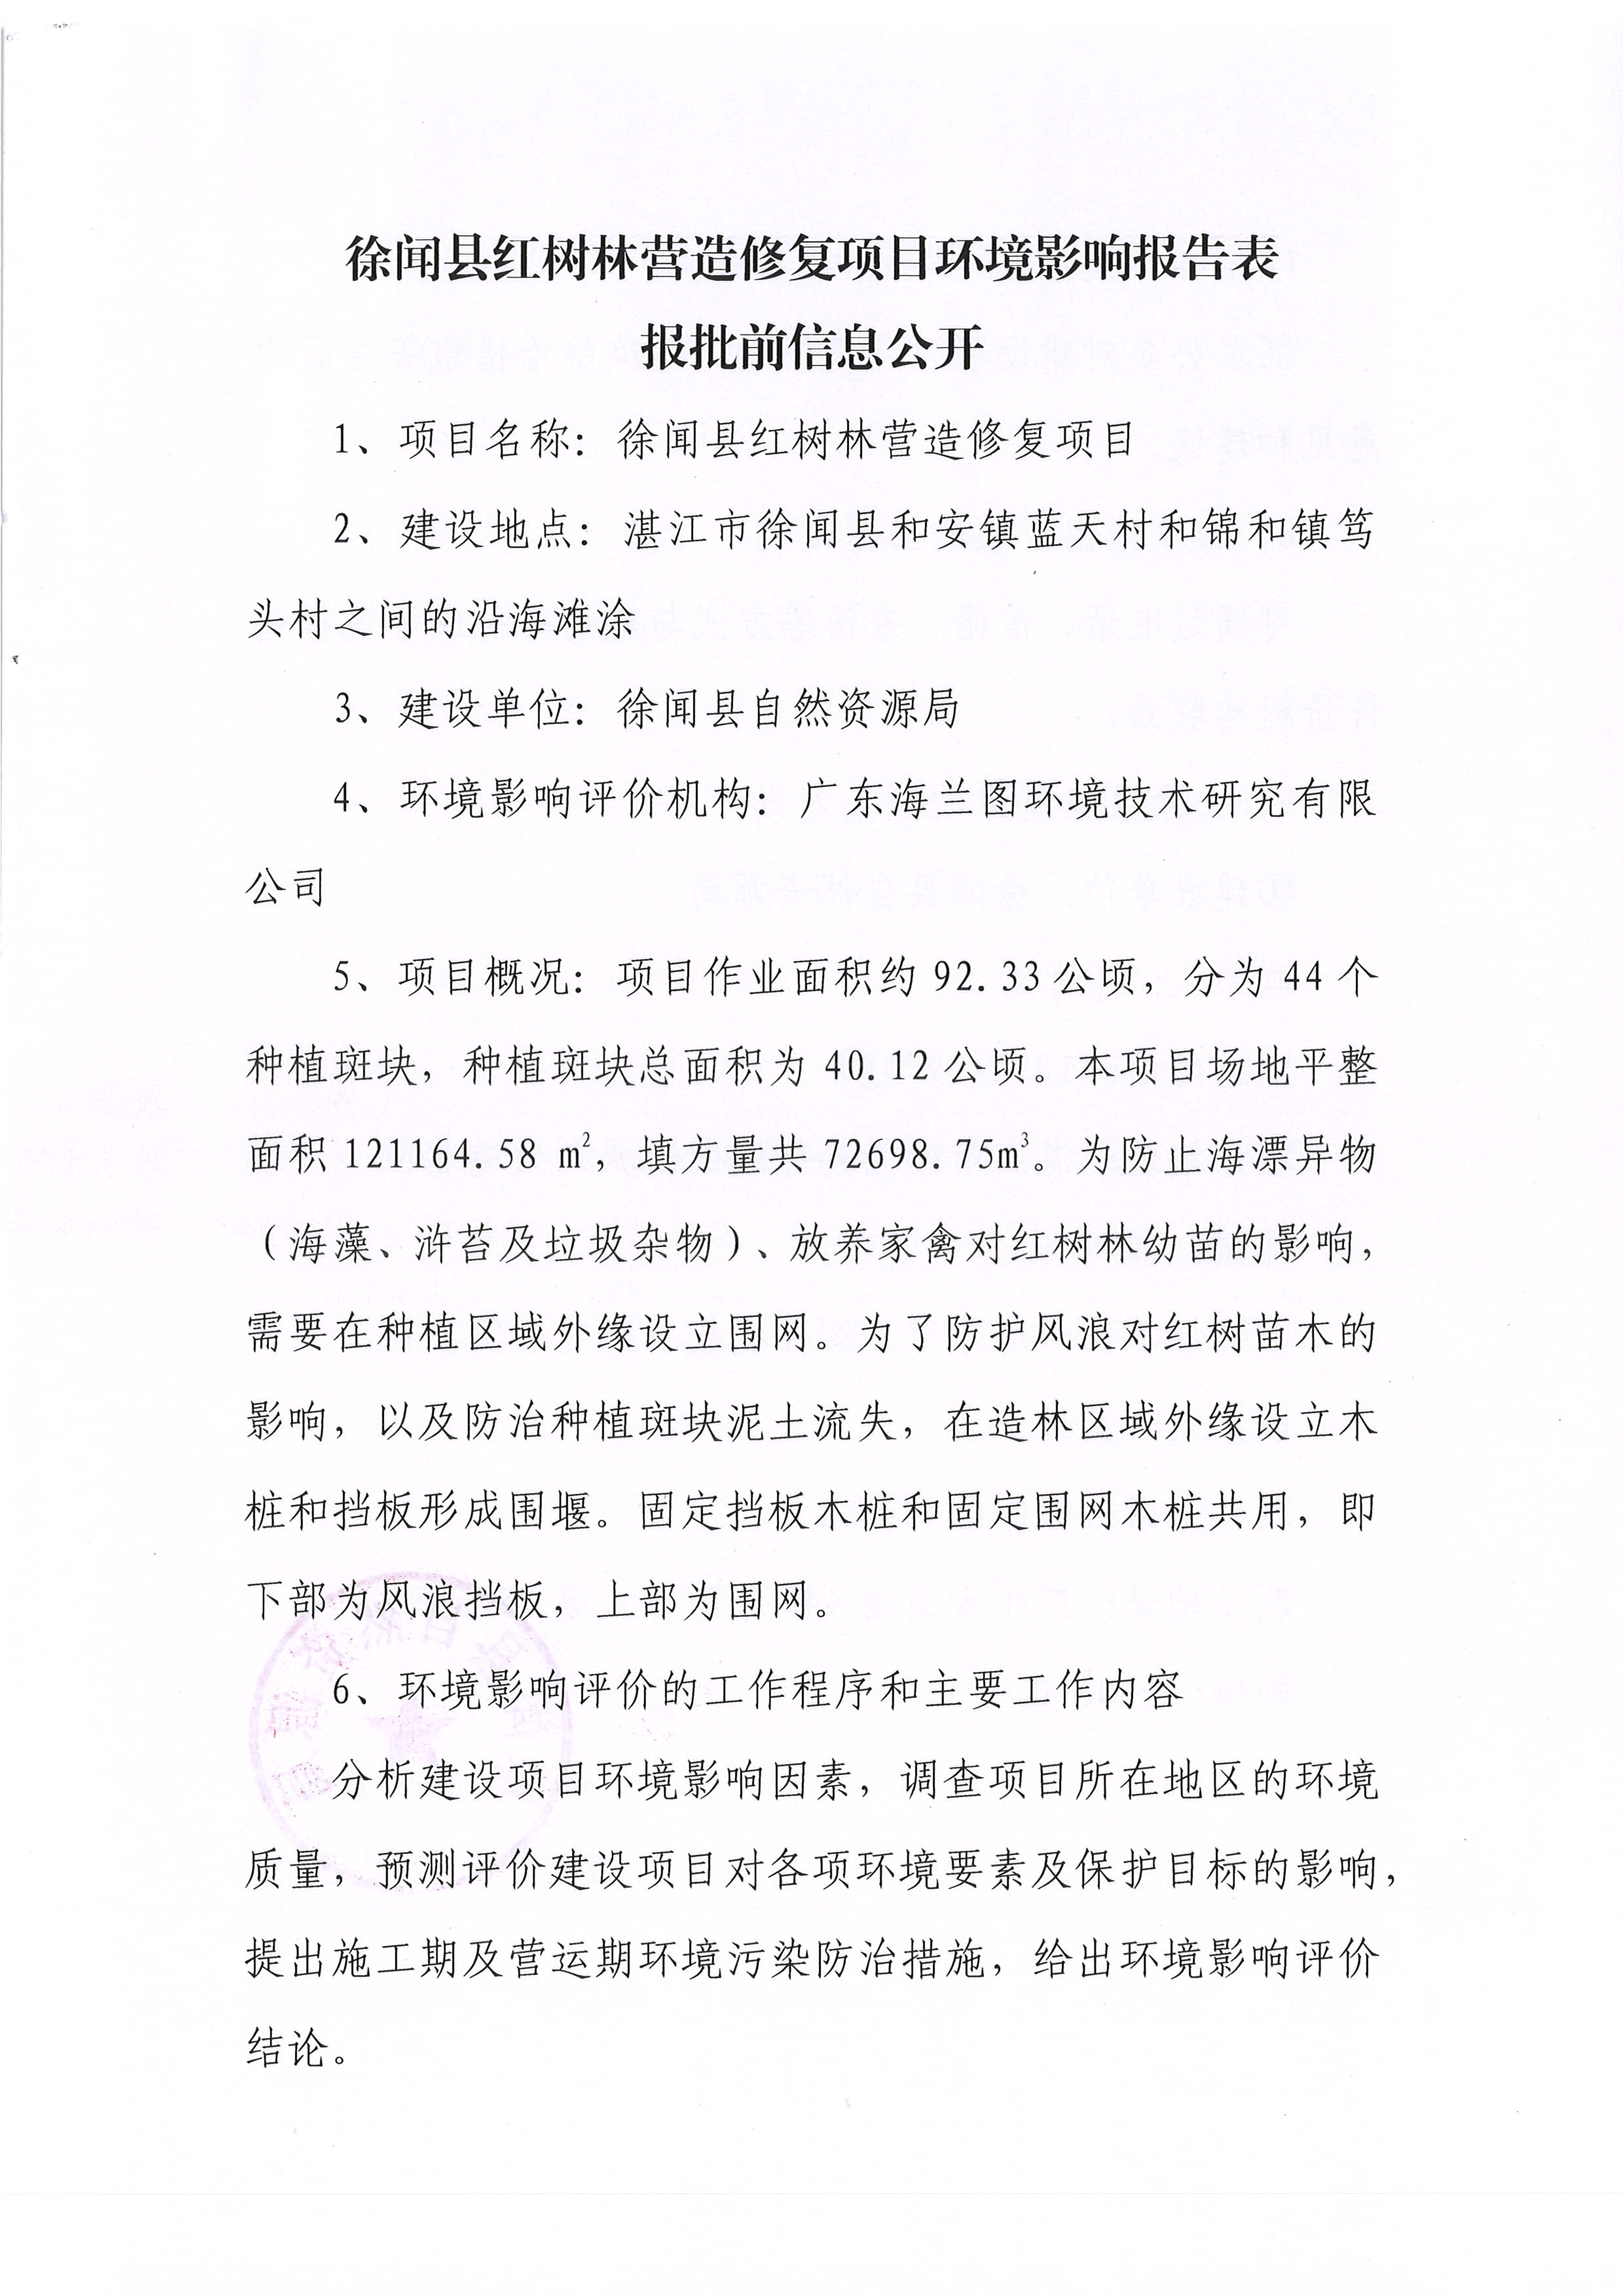 徐闻县红树林营造修复项目环境影响报告表报批前信息公开.jpg